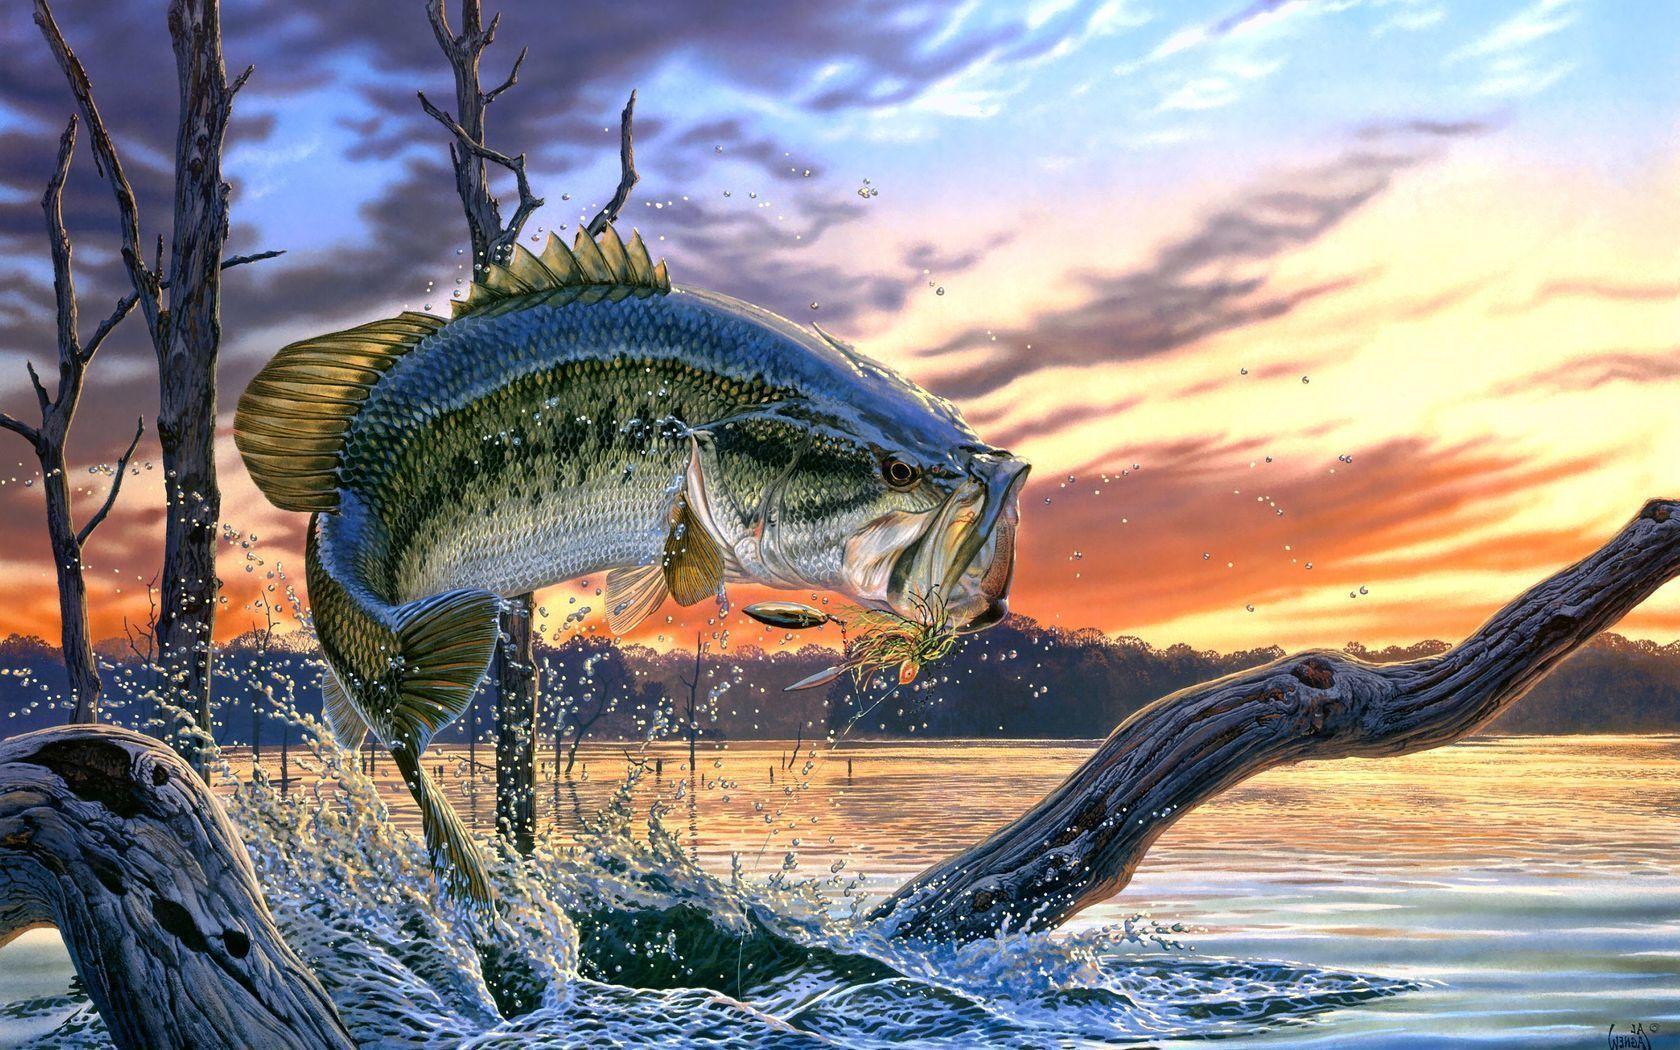 largemouth bass fishing wallpaper screensaver. Image